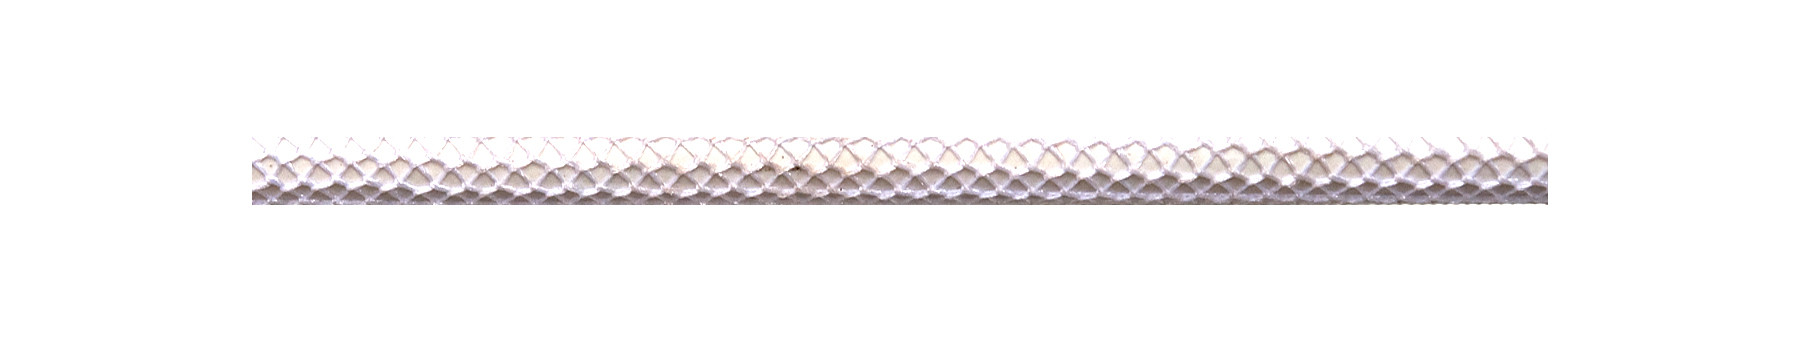 Textilkabel Glänzend Weiß Netzartiger Textilmantel